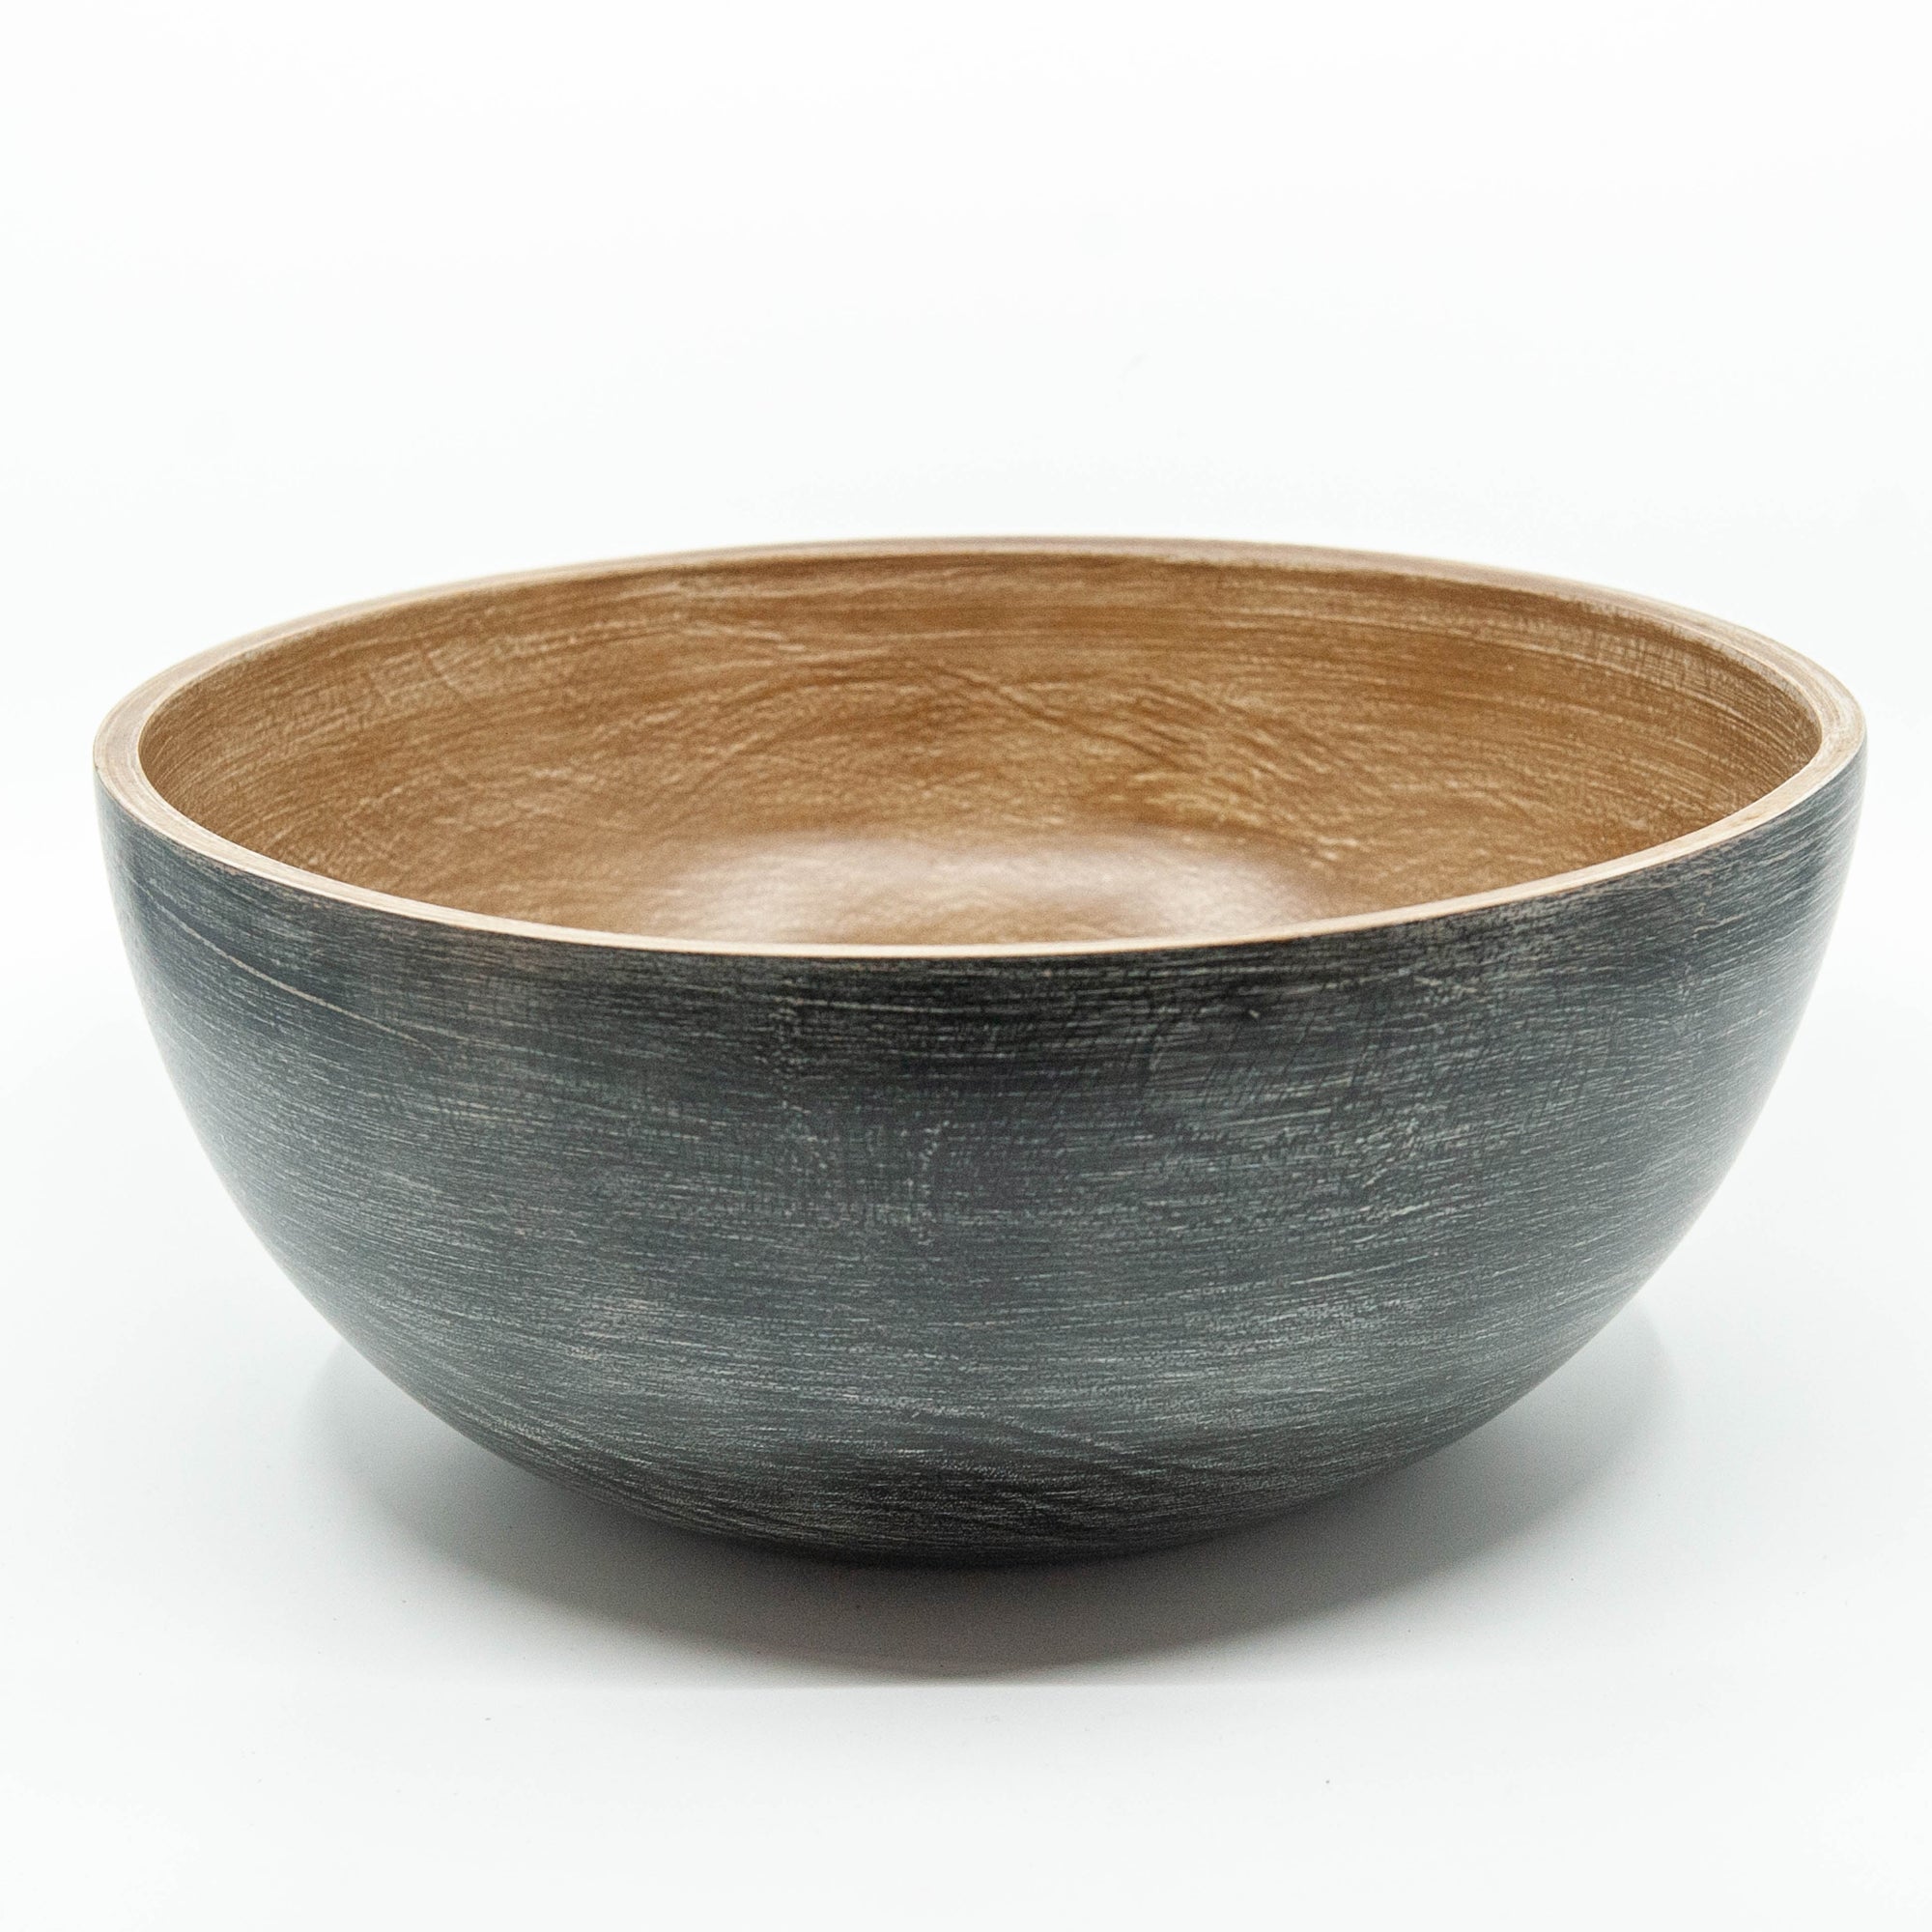 Mango Wood Large Bowl - 10" (Black Wash)